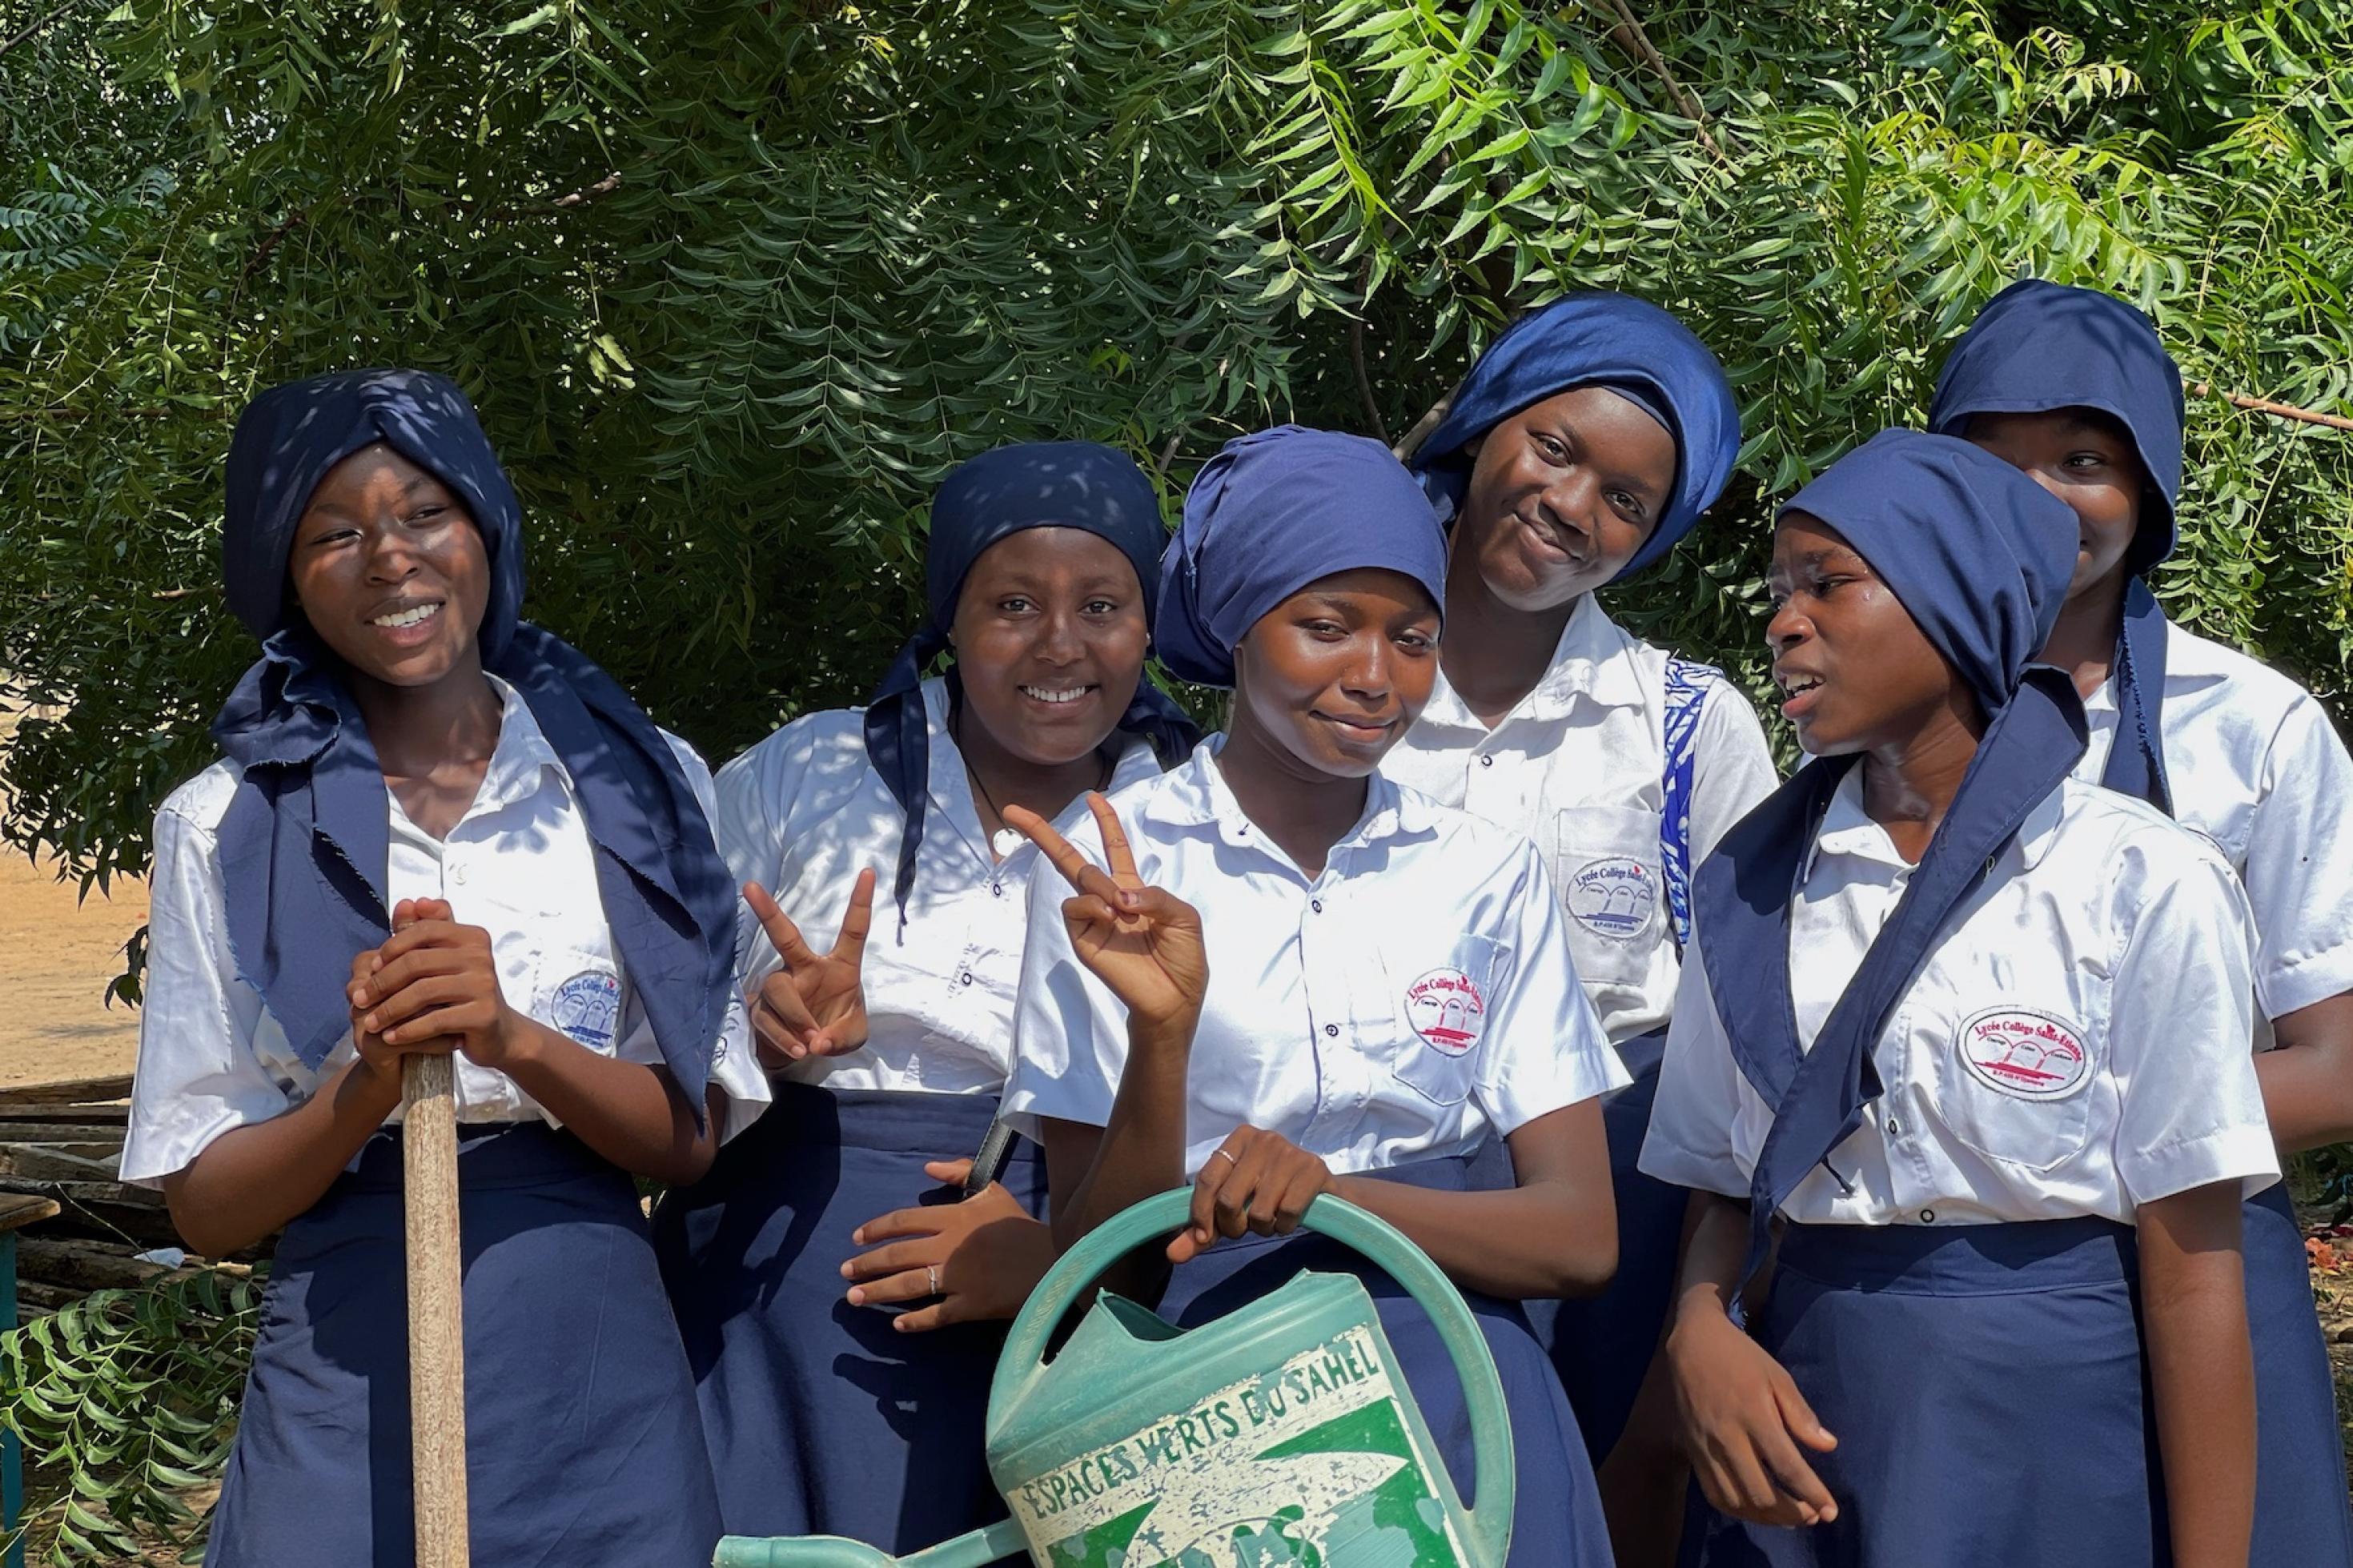 Sechs junge Frauen aus dem Tschad stehen in blauweißer Schuluniform vor einer grünen Hecke und blicken lachend in die Kamera. Eine hält eine Gießkanne in der Hand.